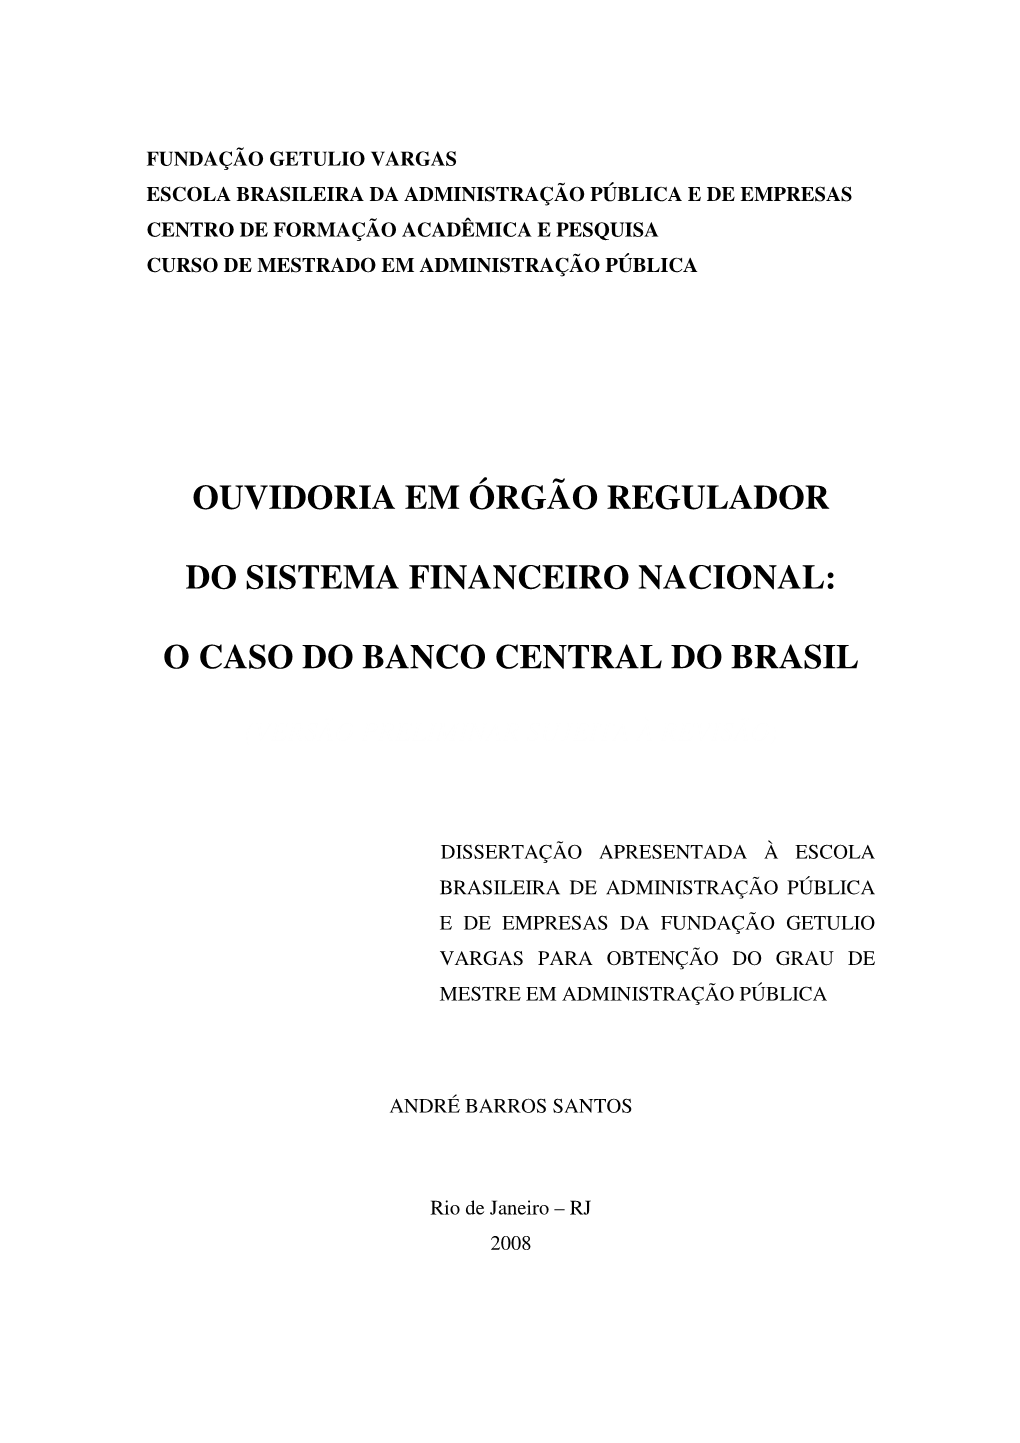 Ouvidoria Em Órgão Regulador Do Sistema Financeiro Nacional: O Caso Do Banco Central Do Brasil